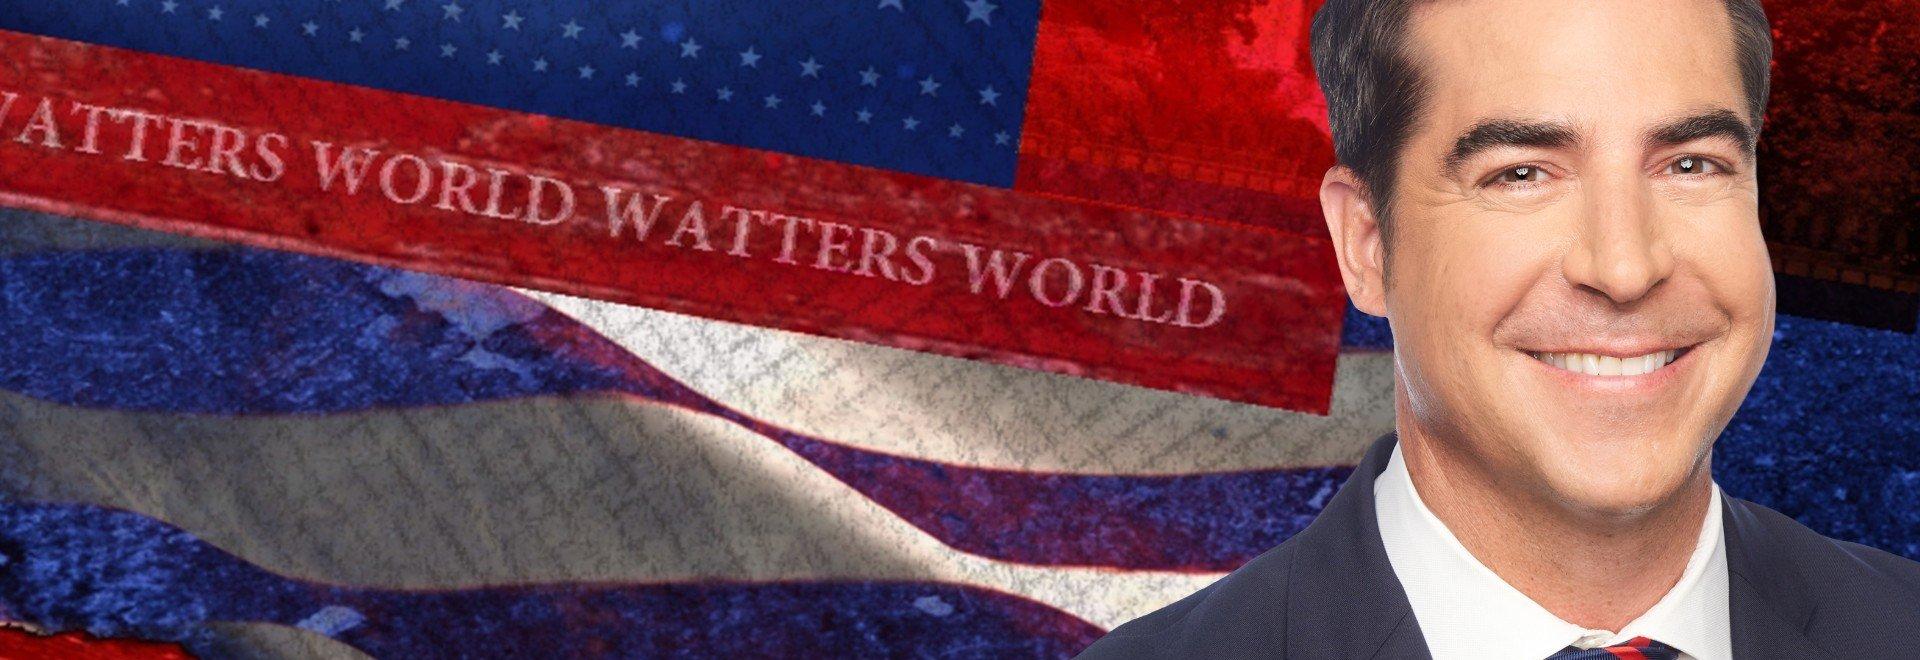 Watters World